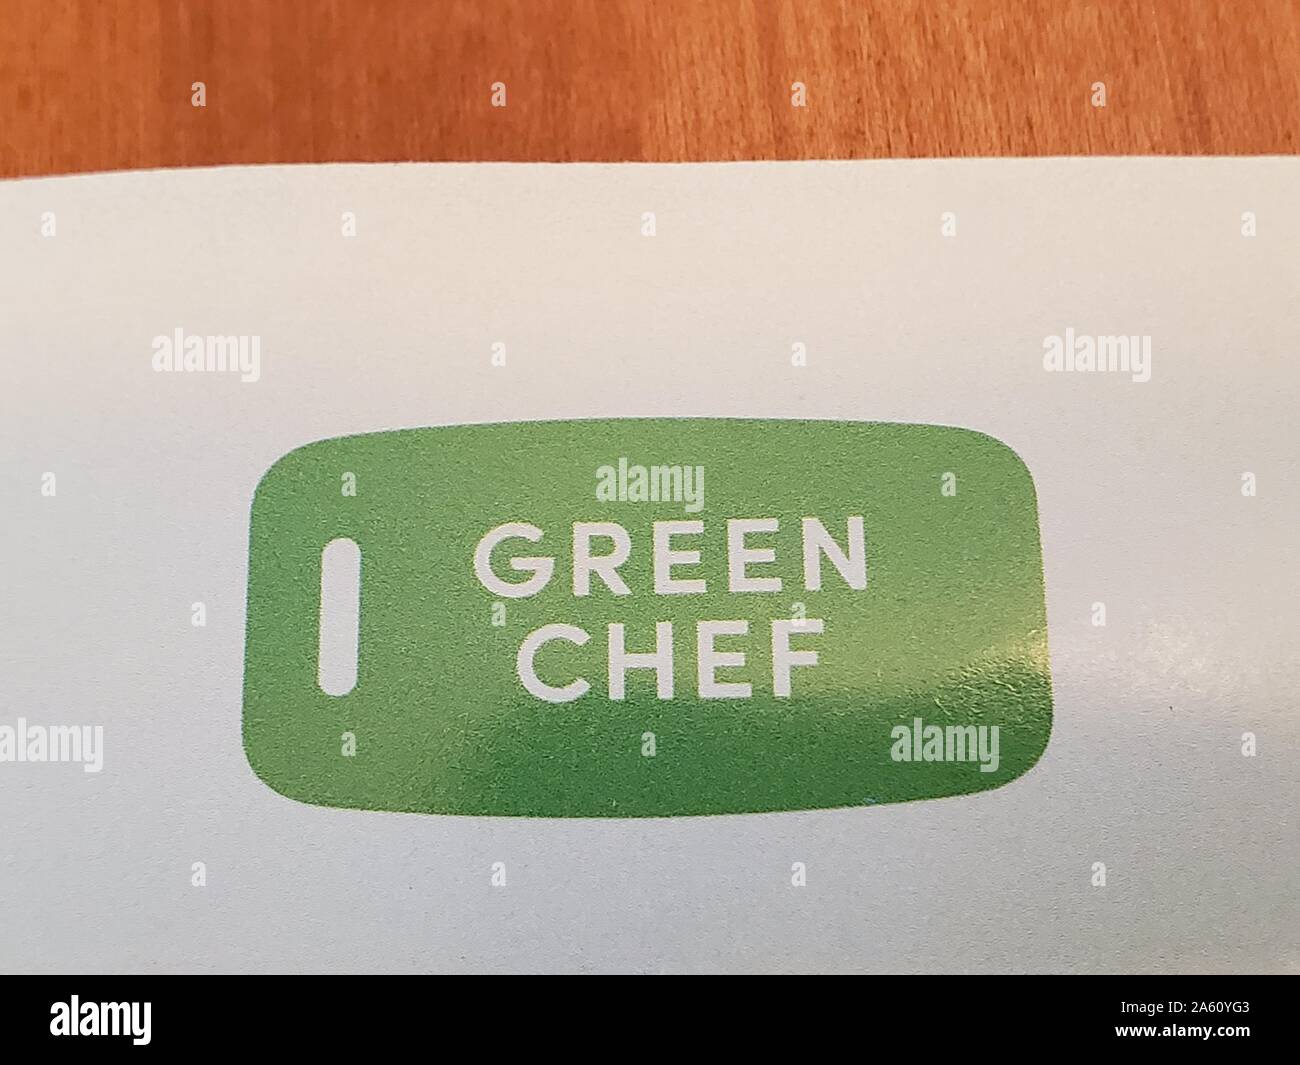 Nahaufnahme des Logos für den Speise Kit Lieferservice Green Chef, der sich auf organische Lebensmittel und spezielle Keto- und Paleo-Diäten konzentriert, auf Papier auf hellem Holzhintergrund, 10. September 2019. () Stockfoto